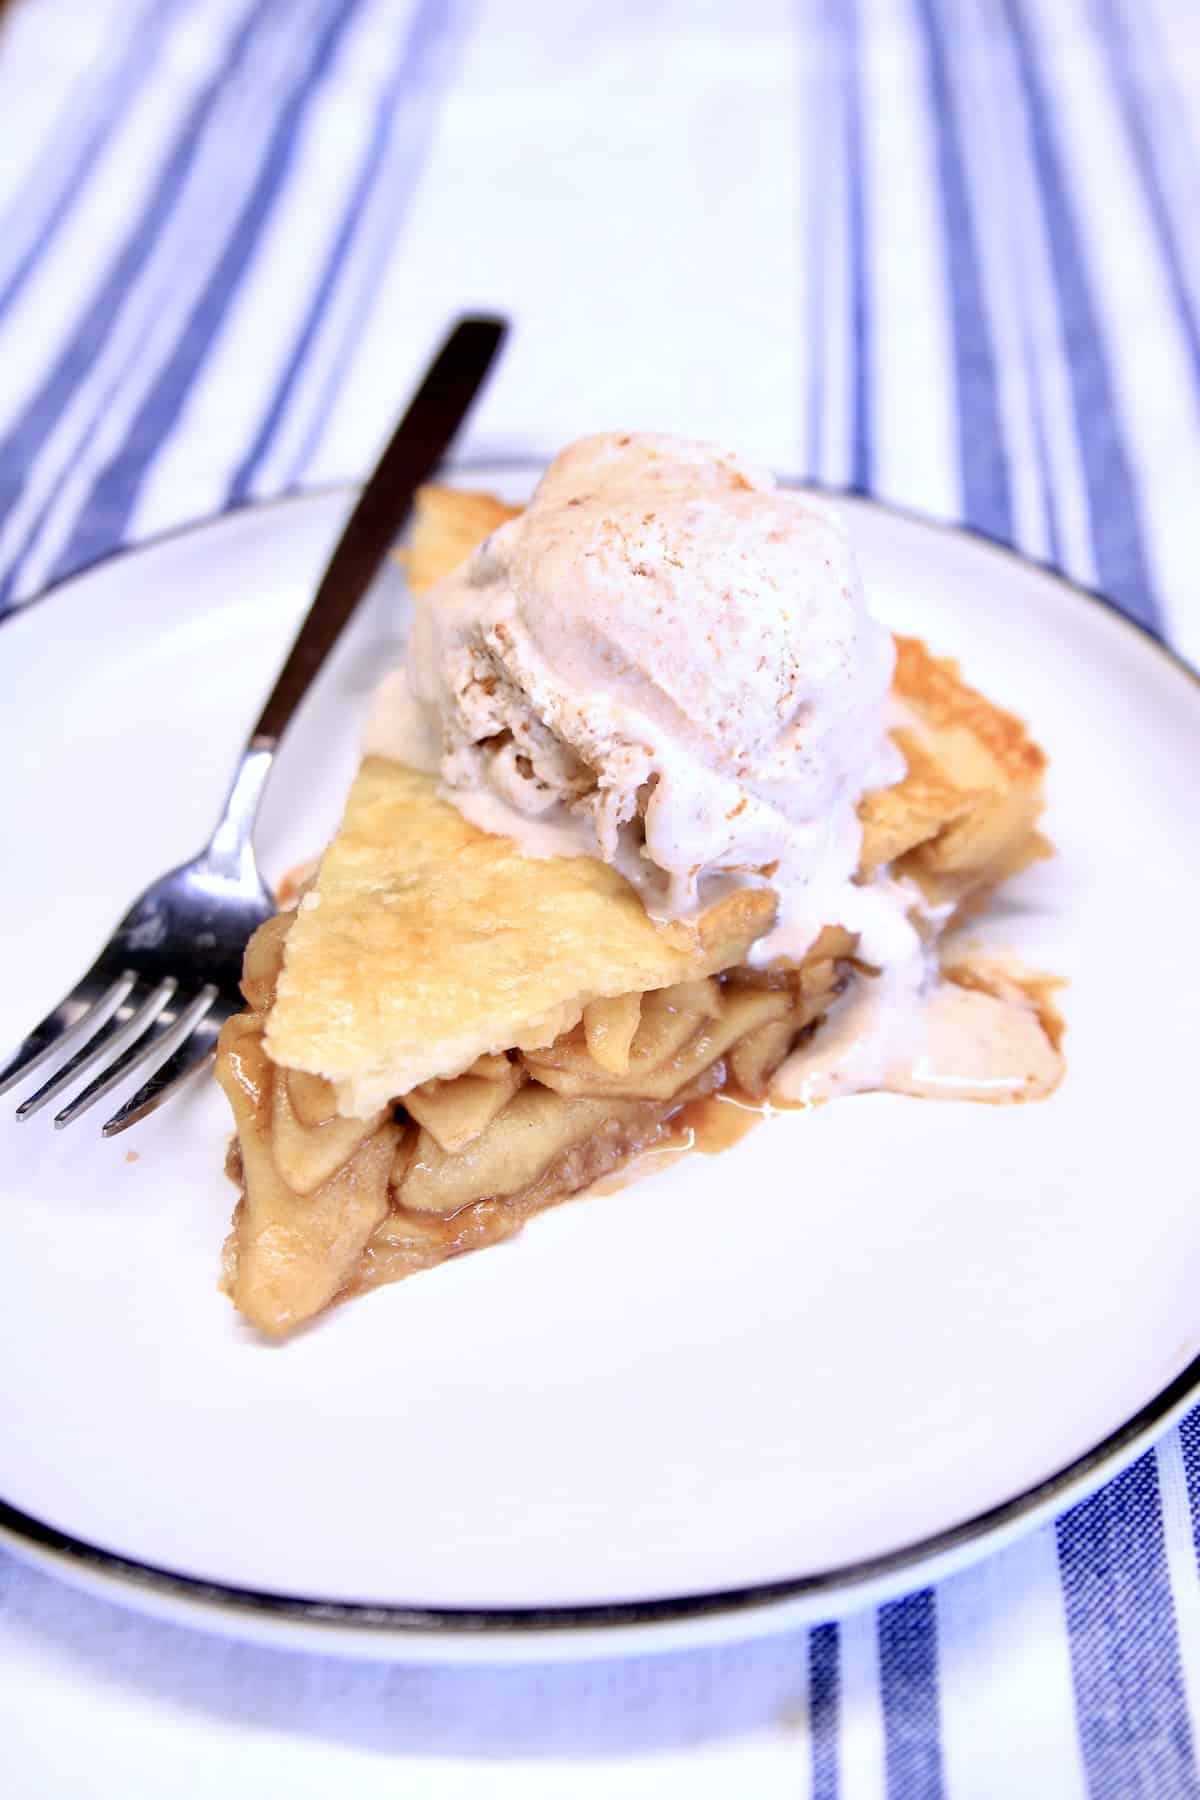 Slice of apple pie with ice cream. 